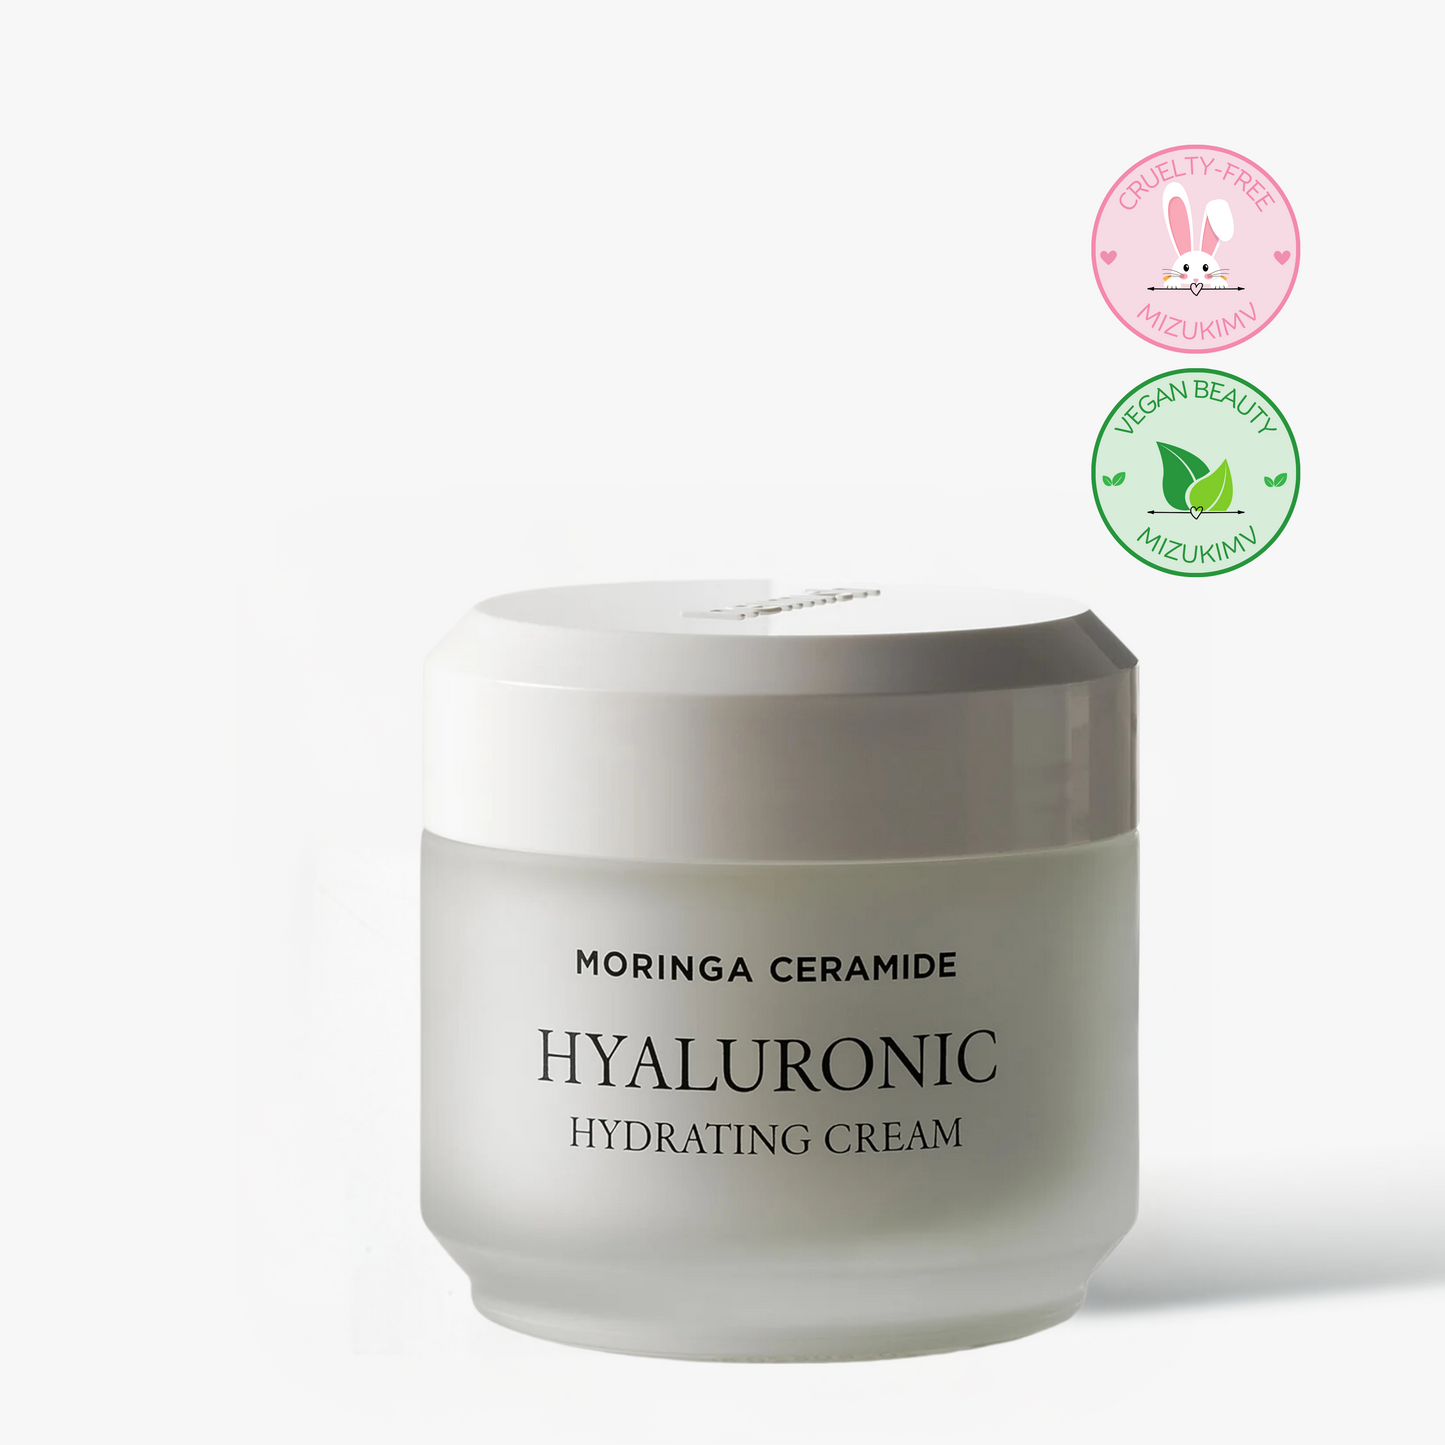 HEIMISH Moringa Ceramide Hylauronic Hydrating Cream